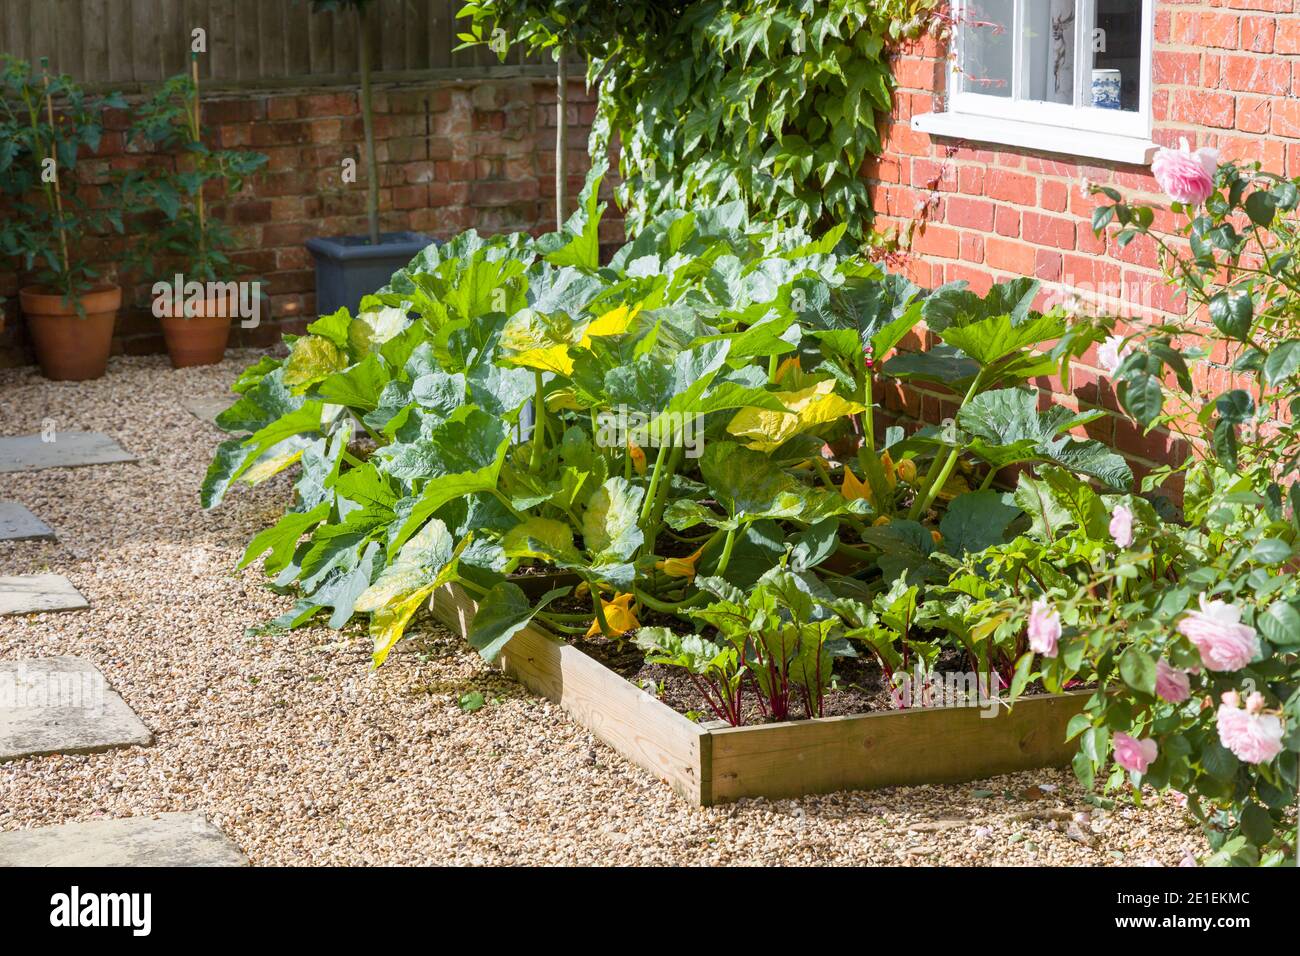 Gemüse (Zucchini Pflanzen und Rote Bete) wächst in einem Hochbeet in einem britischen Garten im Sommer. Stockfoto